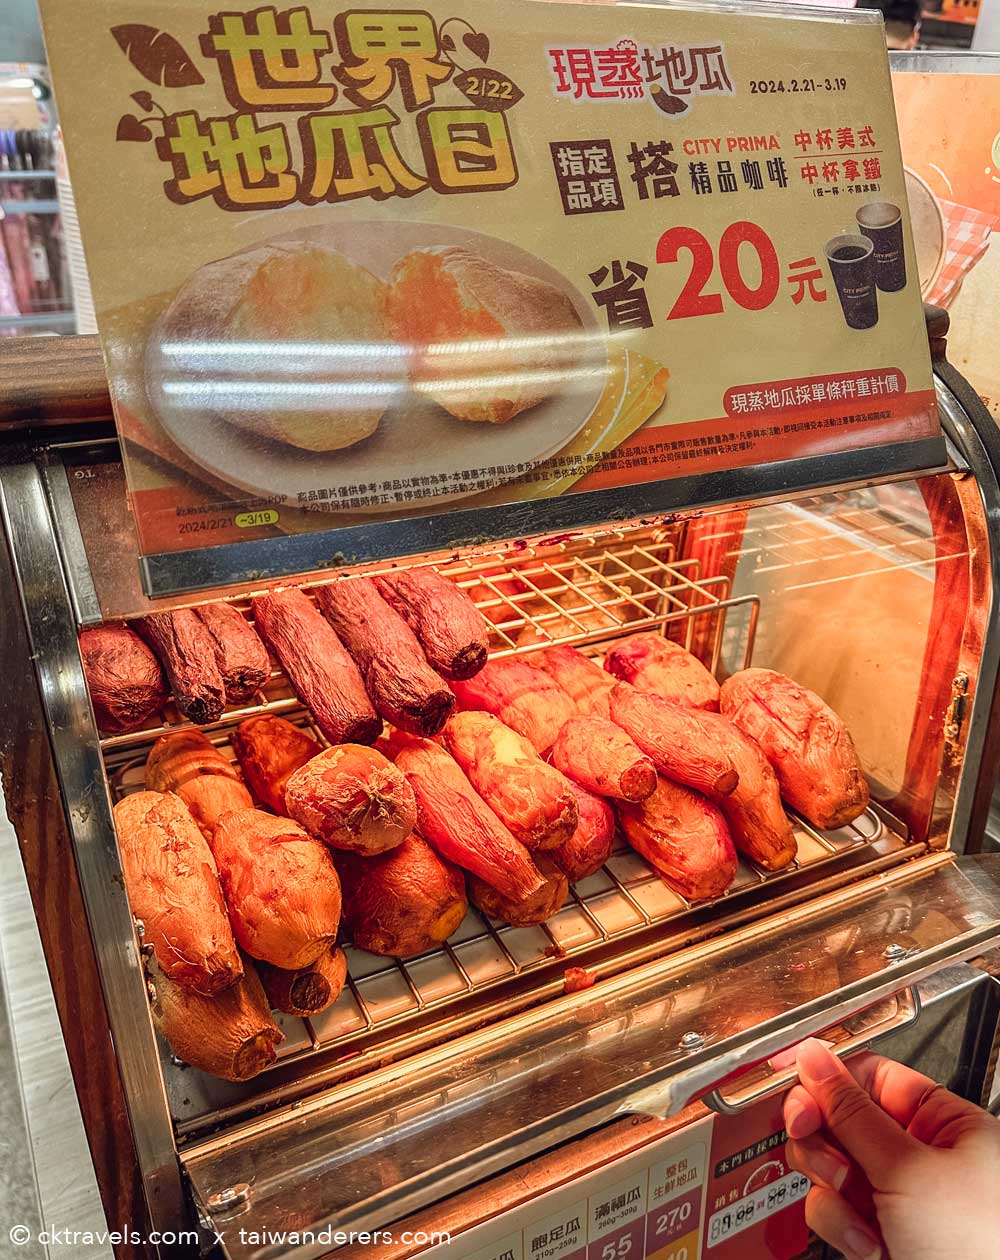 Taiwan 7-Eleven Steamed sweet potatoes